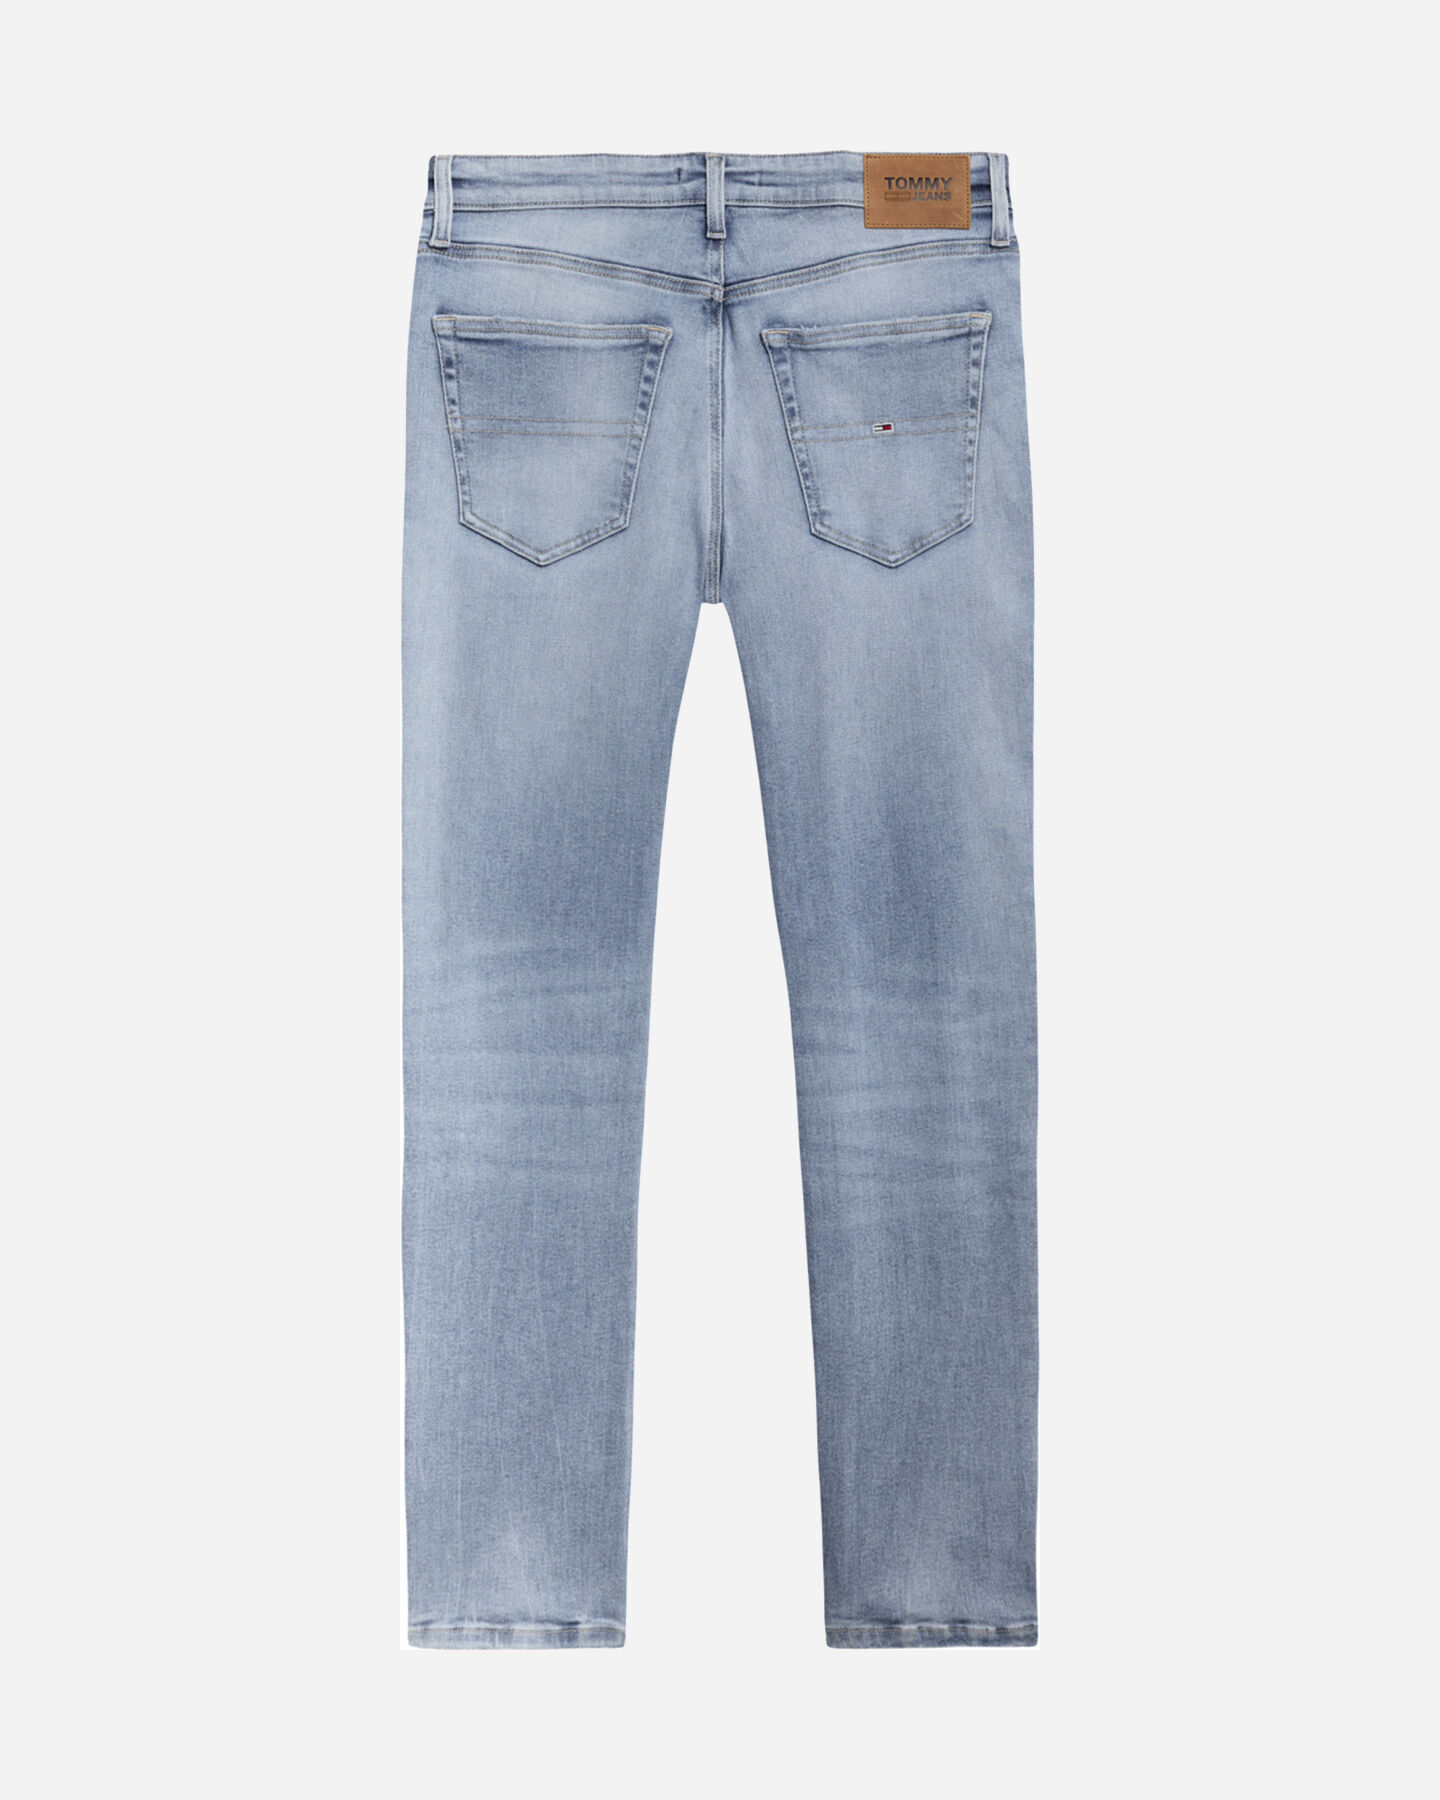  Jeans TOMMY HILFIGER SCANTON SLIM M S4112936|1BK|28 scatto 1